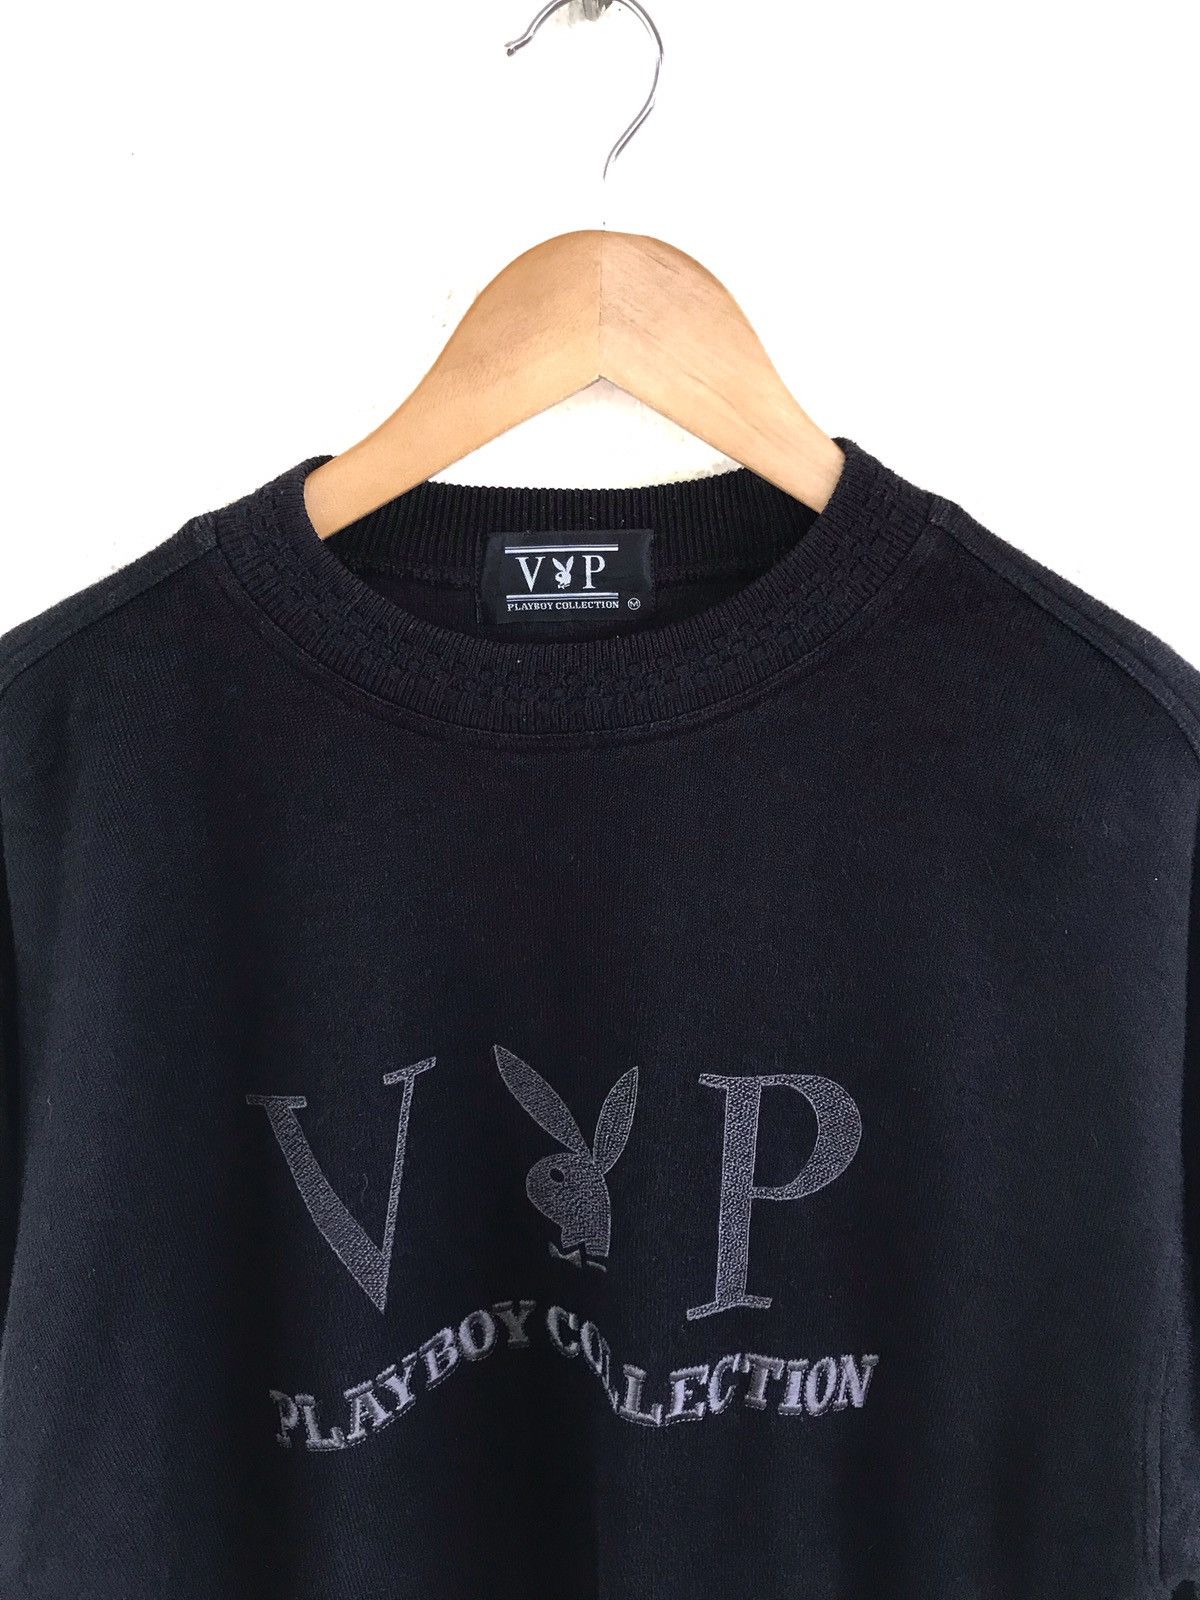 Vintage Playboy Collection Sweatshirt - 2